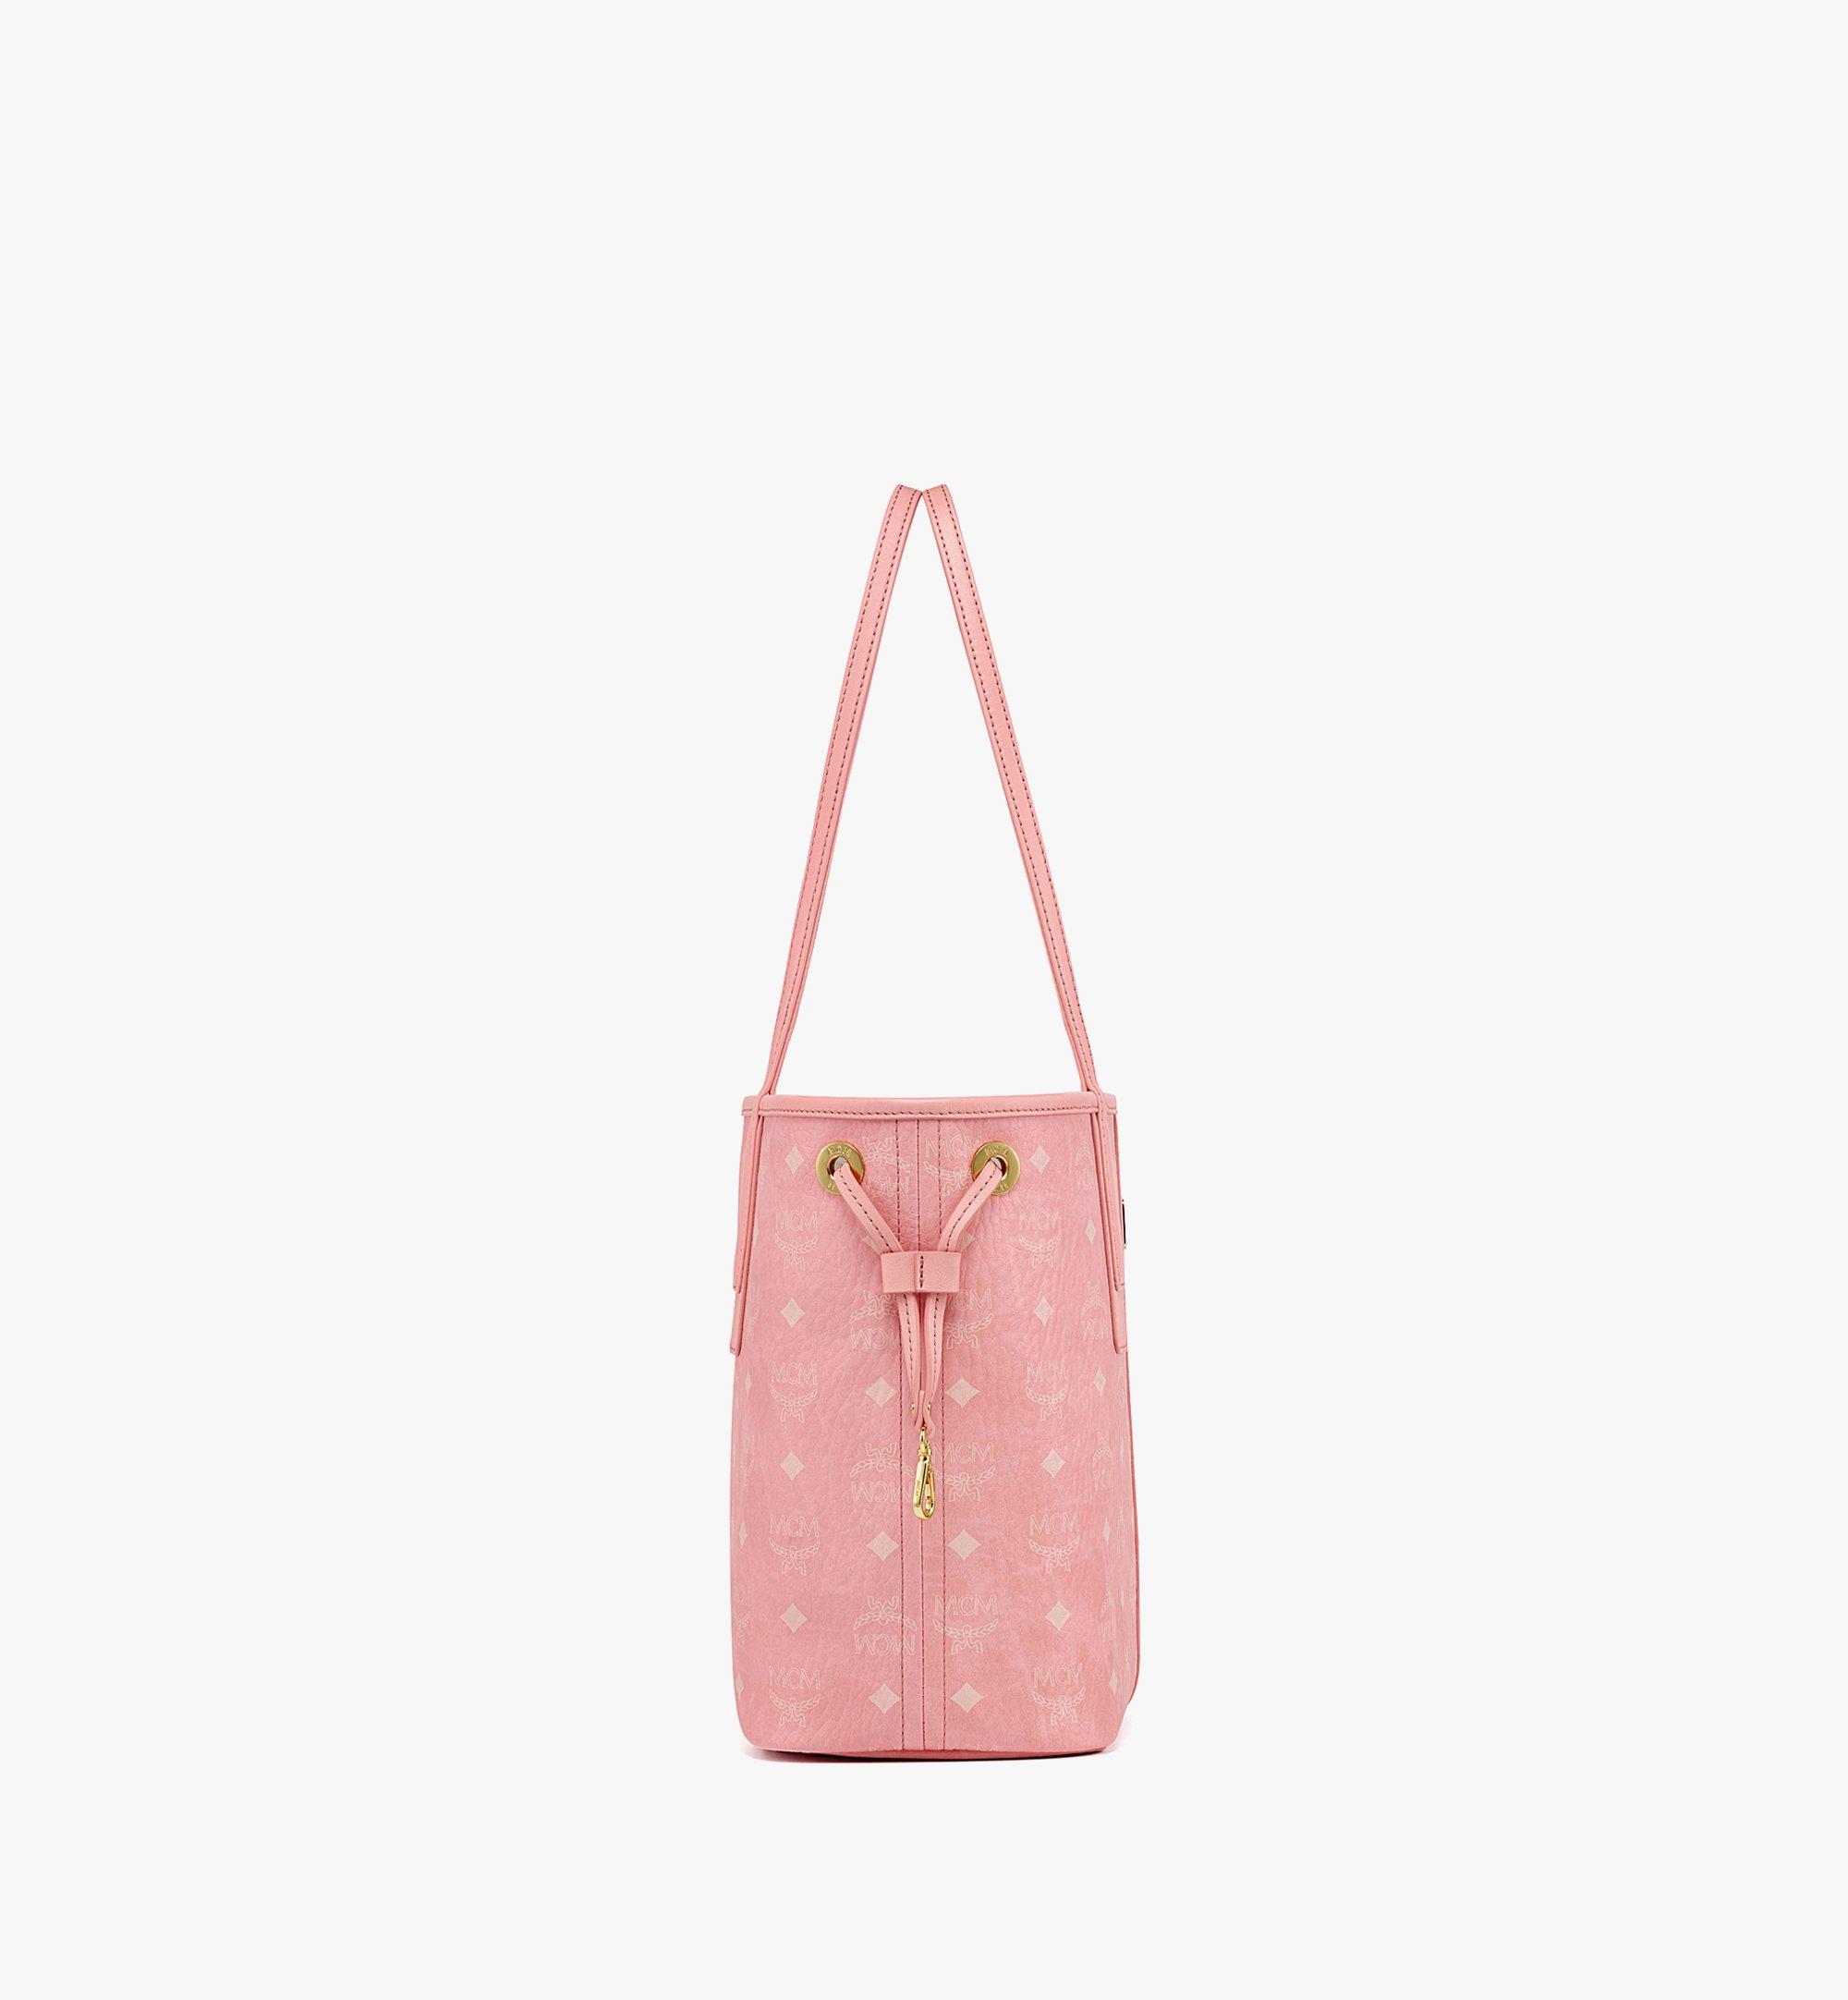 Bolsa sacola louis vuitton - Gold style Handbag